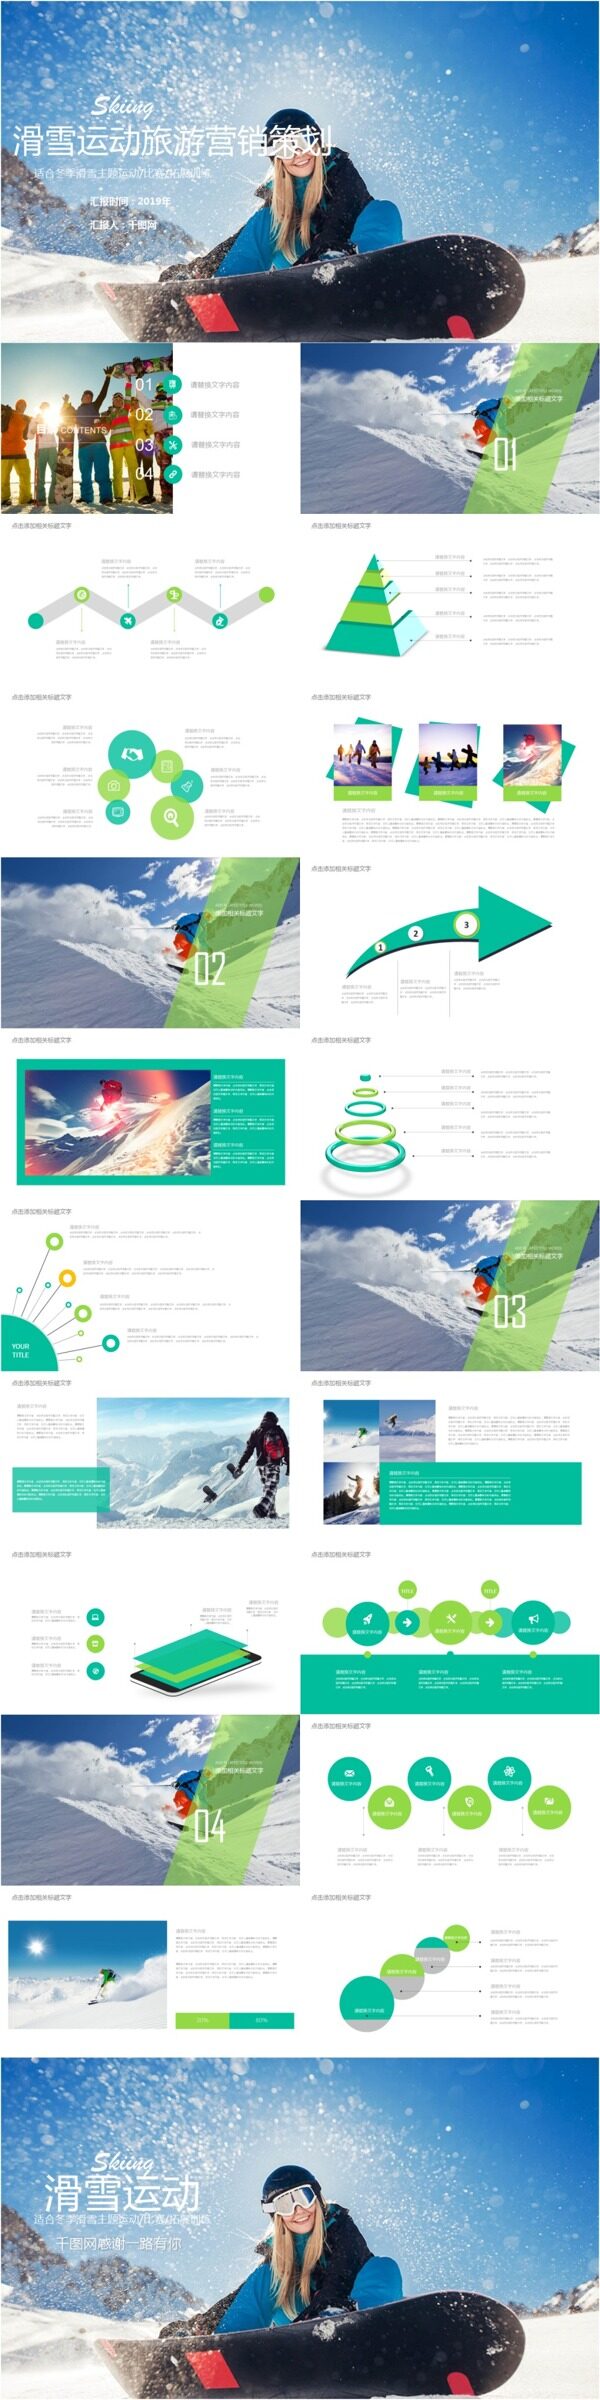 冬季滑雪旅游营销策划PPT模板免费下载